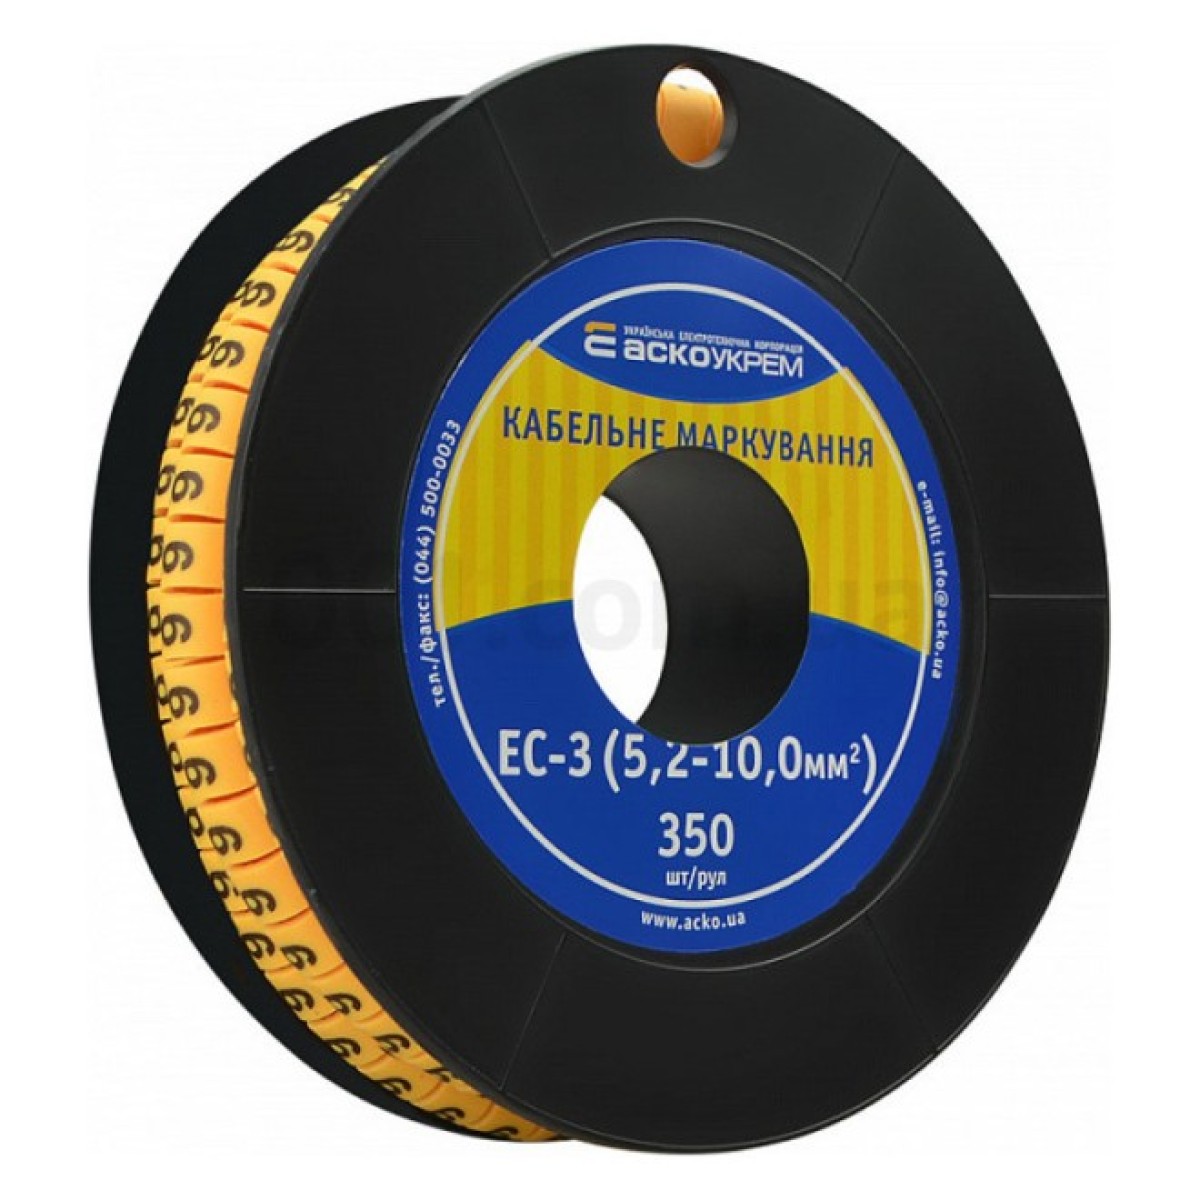 Маркировка EC-3 для кабеля 5,2-10,0 мм² символ «9» (рулон 250 шт.), АСКО-УКРЕМ 256_256.jpg